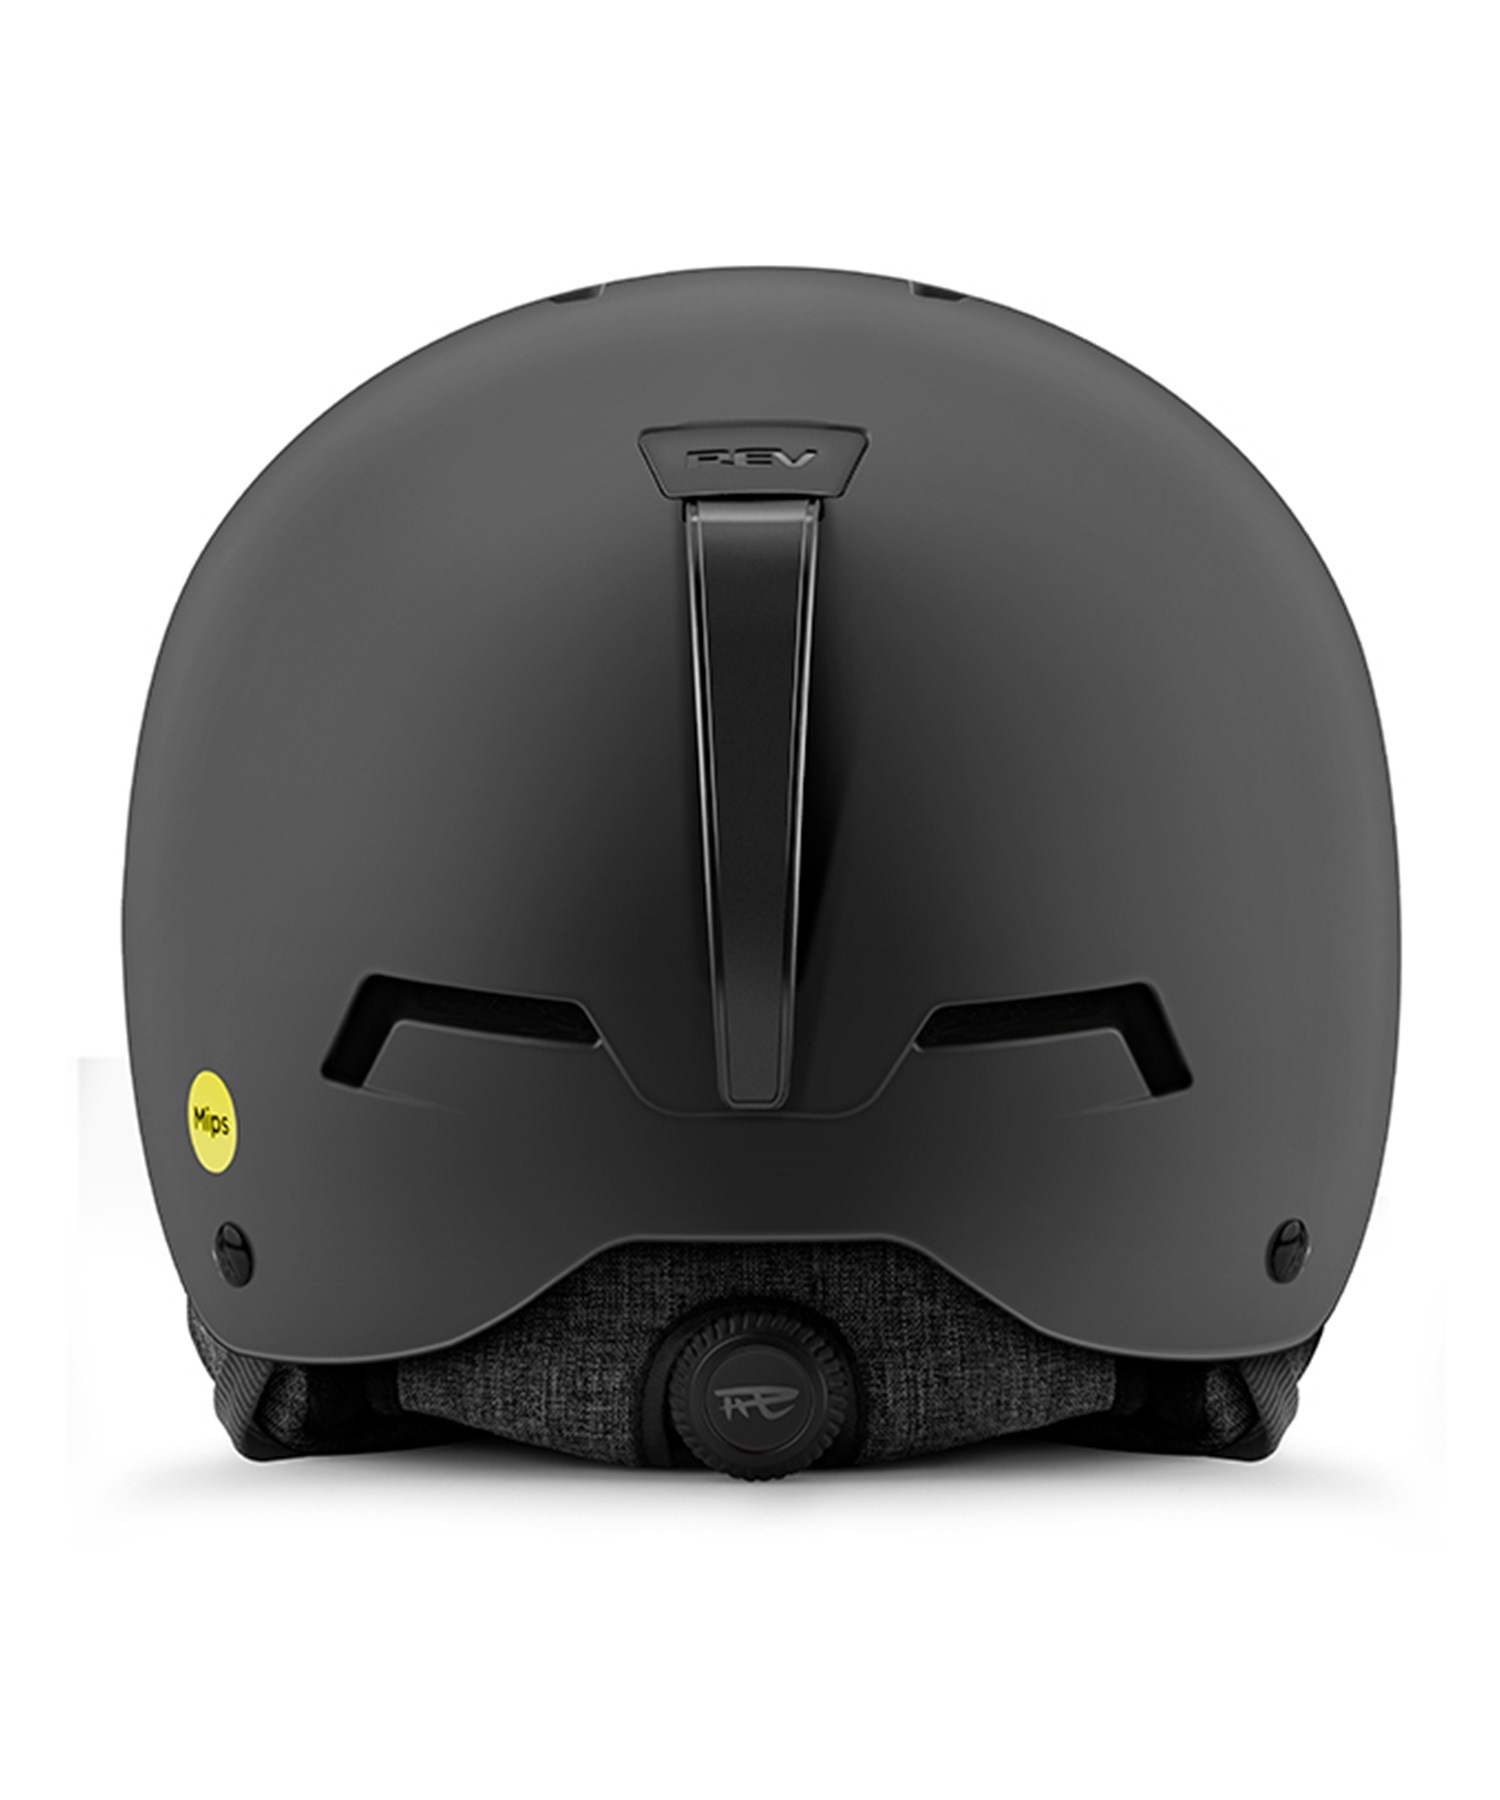 スノーボード ヘルメット ユニセックス REV レブ MIPS ミップス ORIX ムラサキスポーツ 23-24モデル KK L15(BG-M)